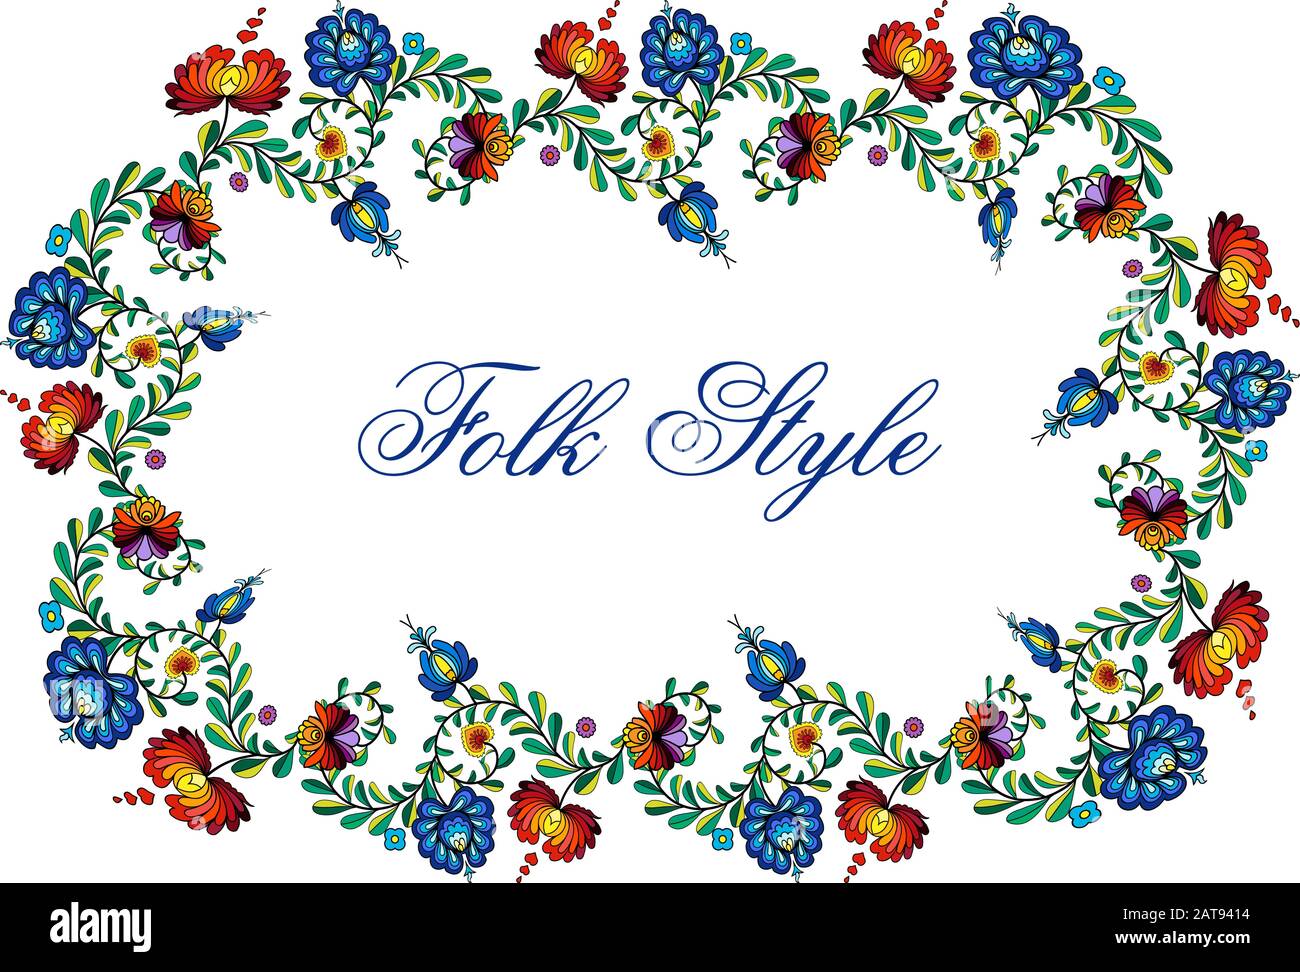 Cadre de mode folklorique - guirlande de fleurs de style ethnique slaves - vignette ovale vectorielle Illustration de Vecteur